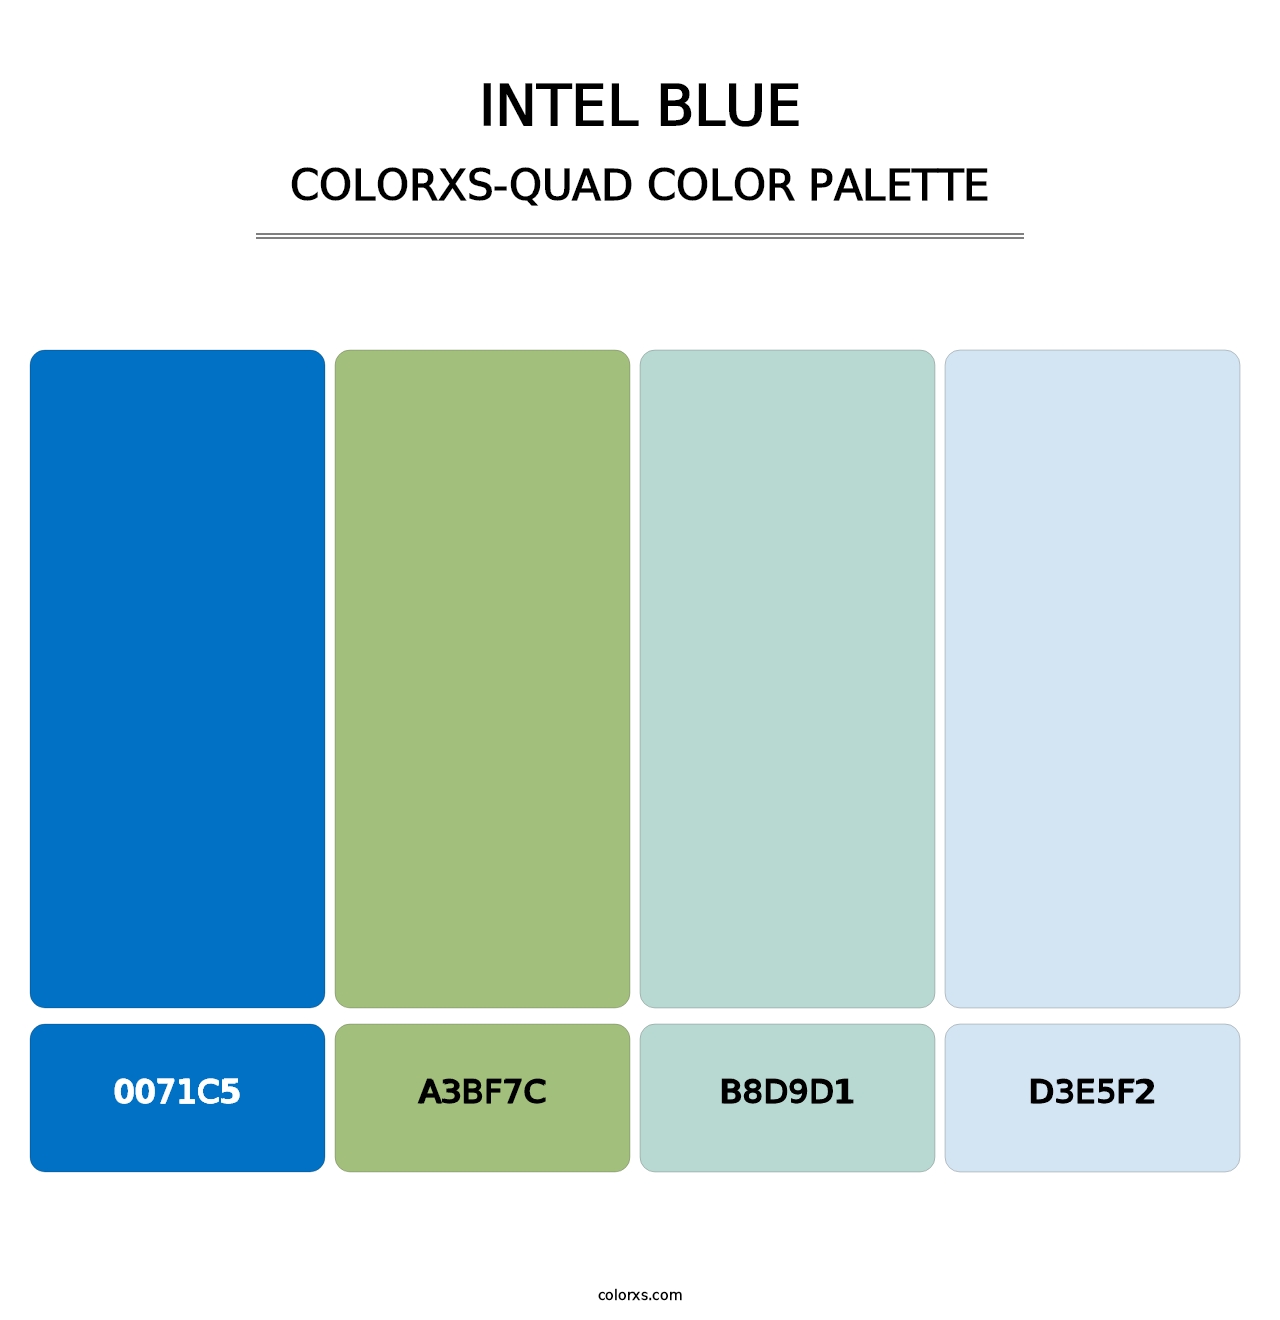 Intel Blue - Colorxs Quad Palette